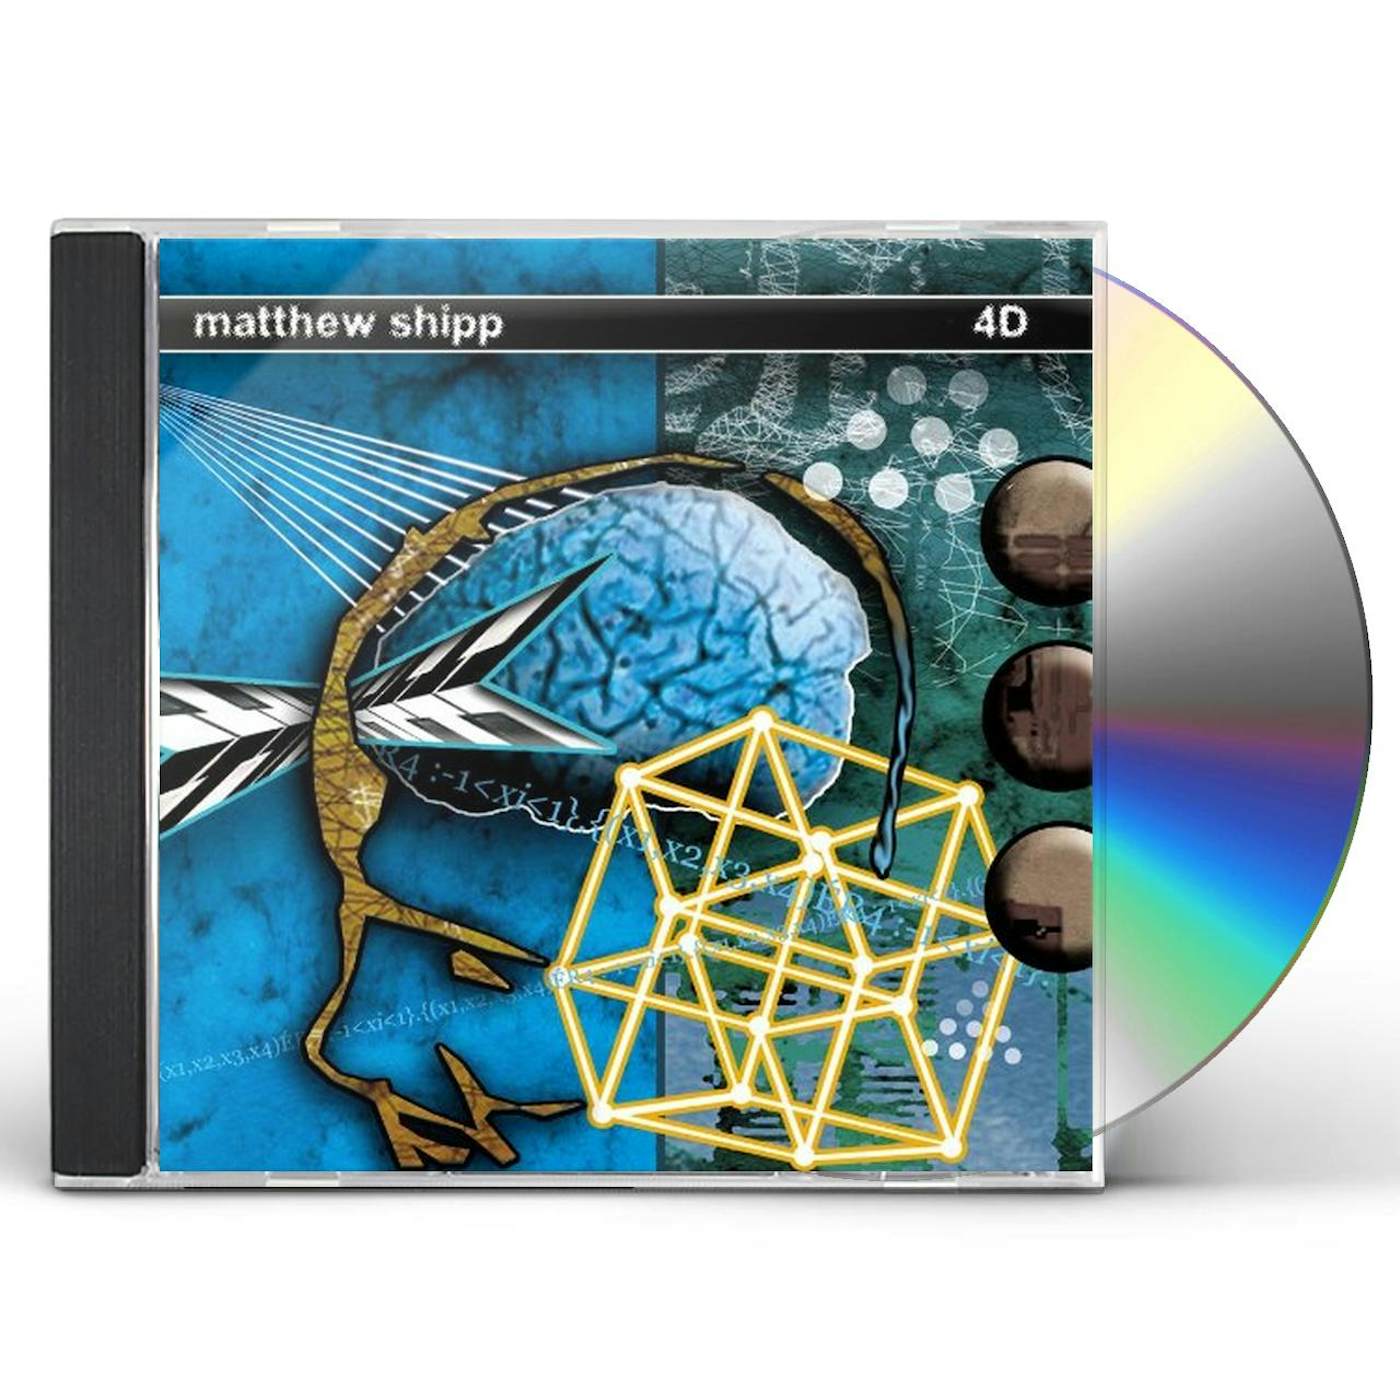 Matthew Shipp 4D CD